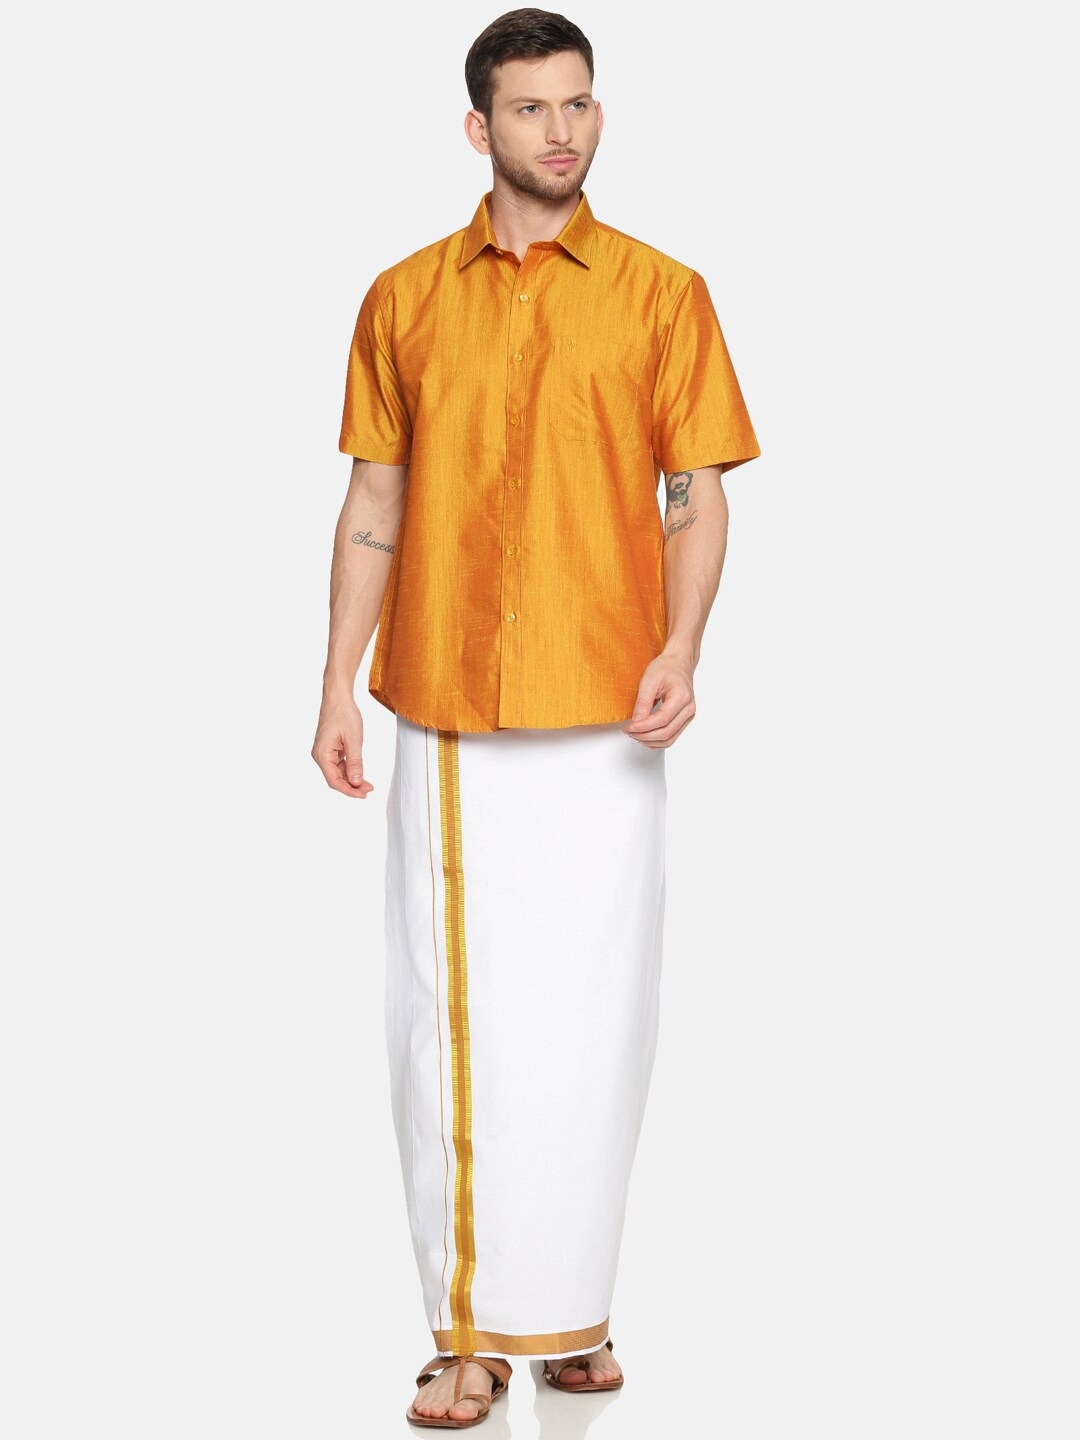 Ramraj Cotton | RAMRAJ COTTON Men Gold-Toned  White Solid Shirt  Dhoti Set 0